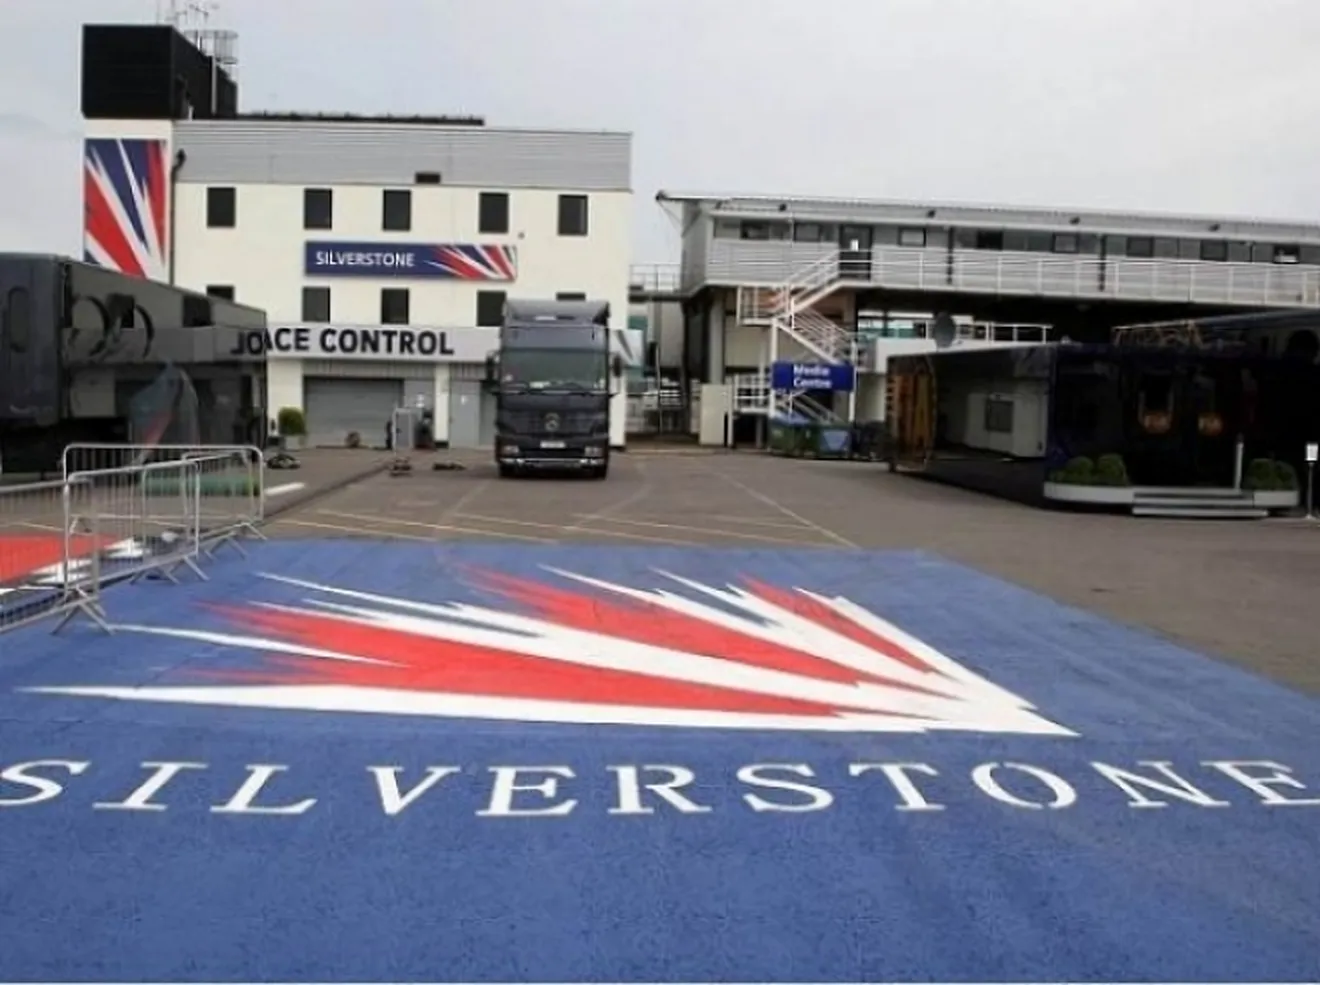 Silverstone firma por 17 años. Ya hay 6.000 entradas vendidas